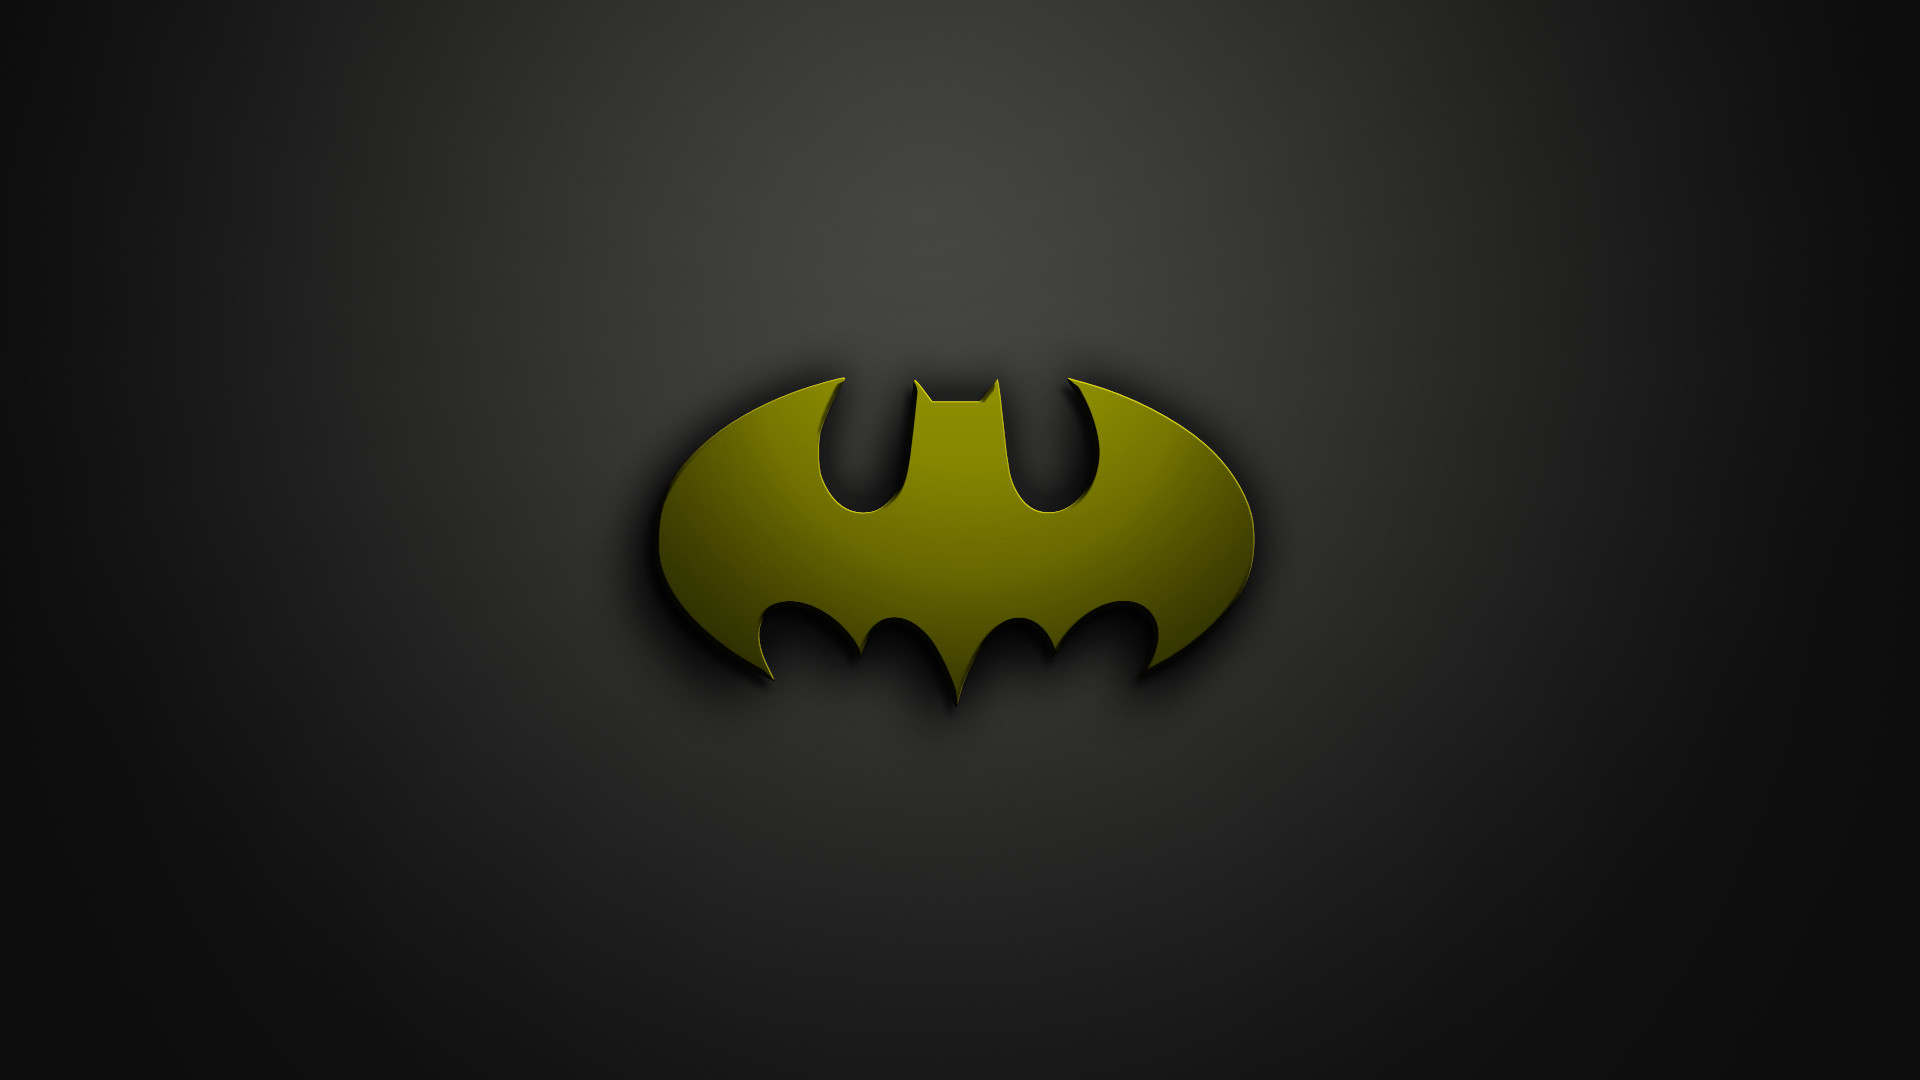 1920x1080 Batman Symbol Phone Wallpaper Batman logo wallpaper